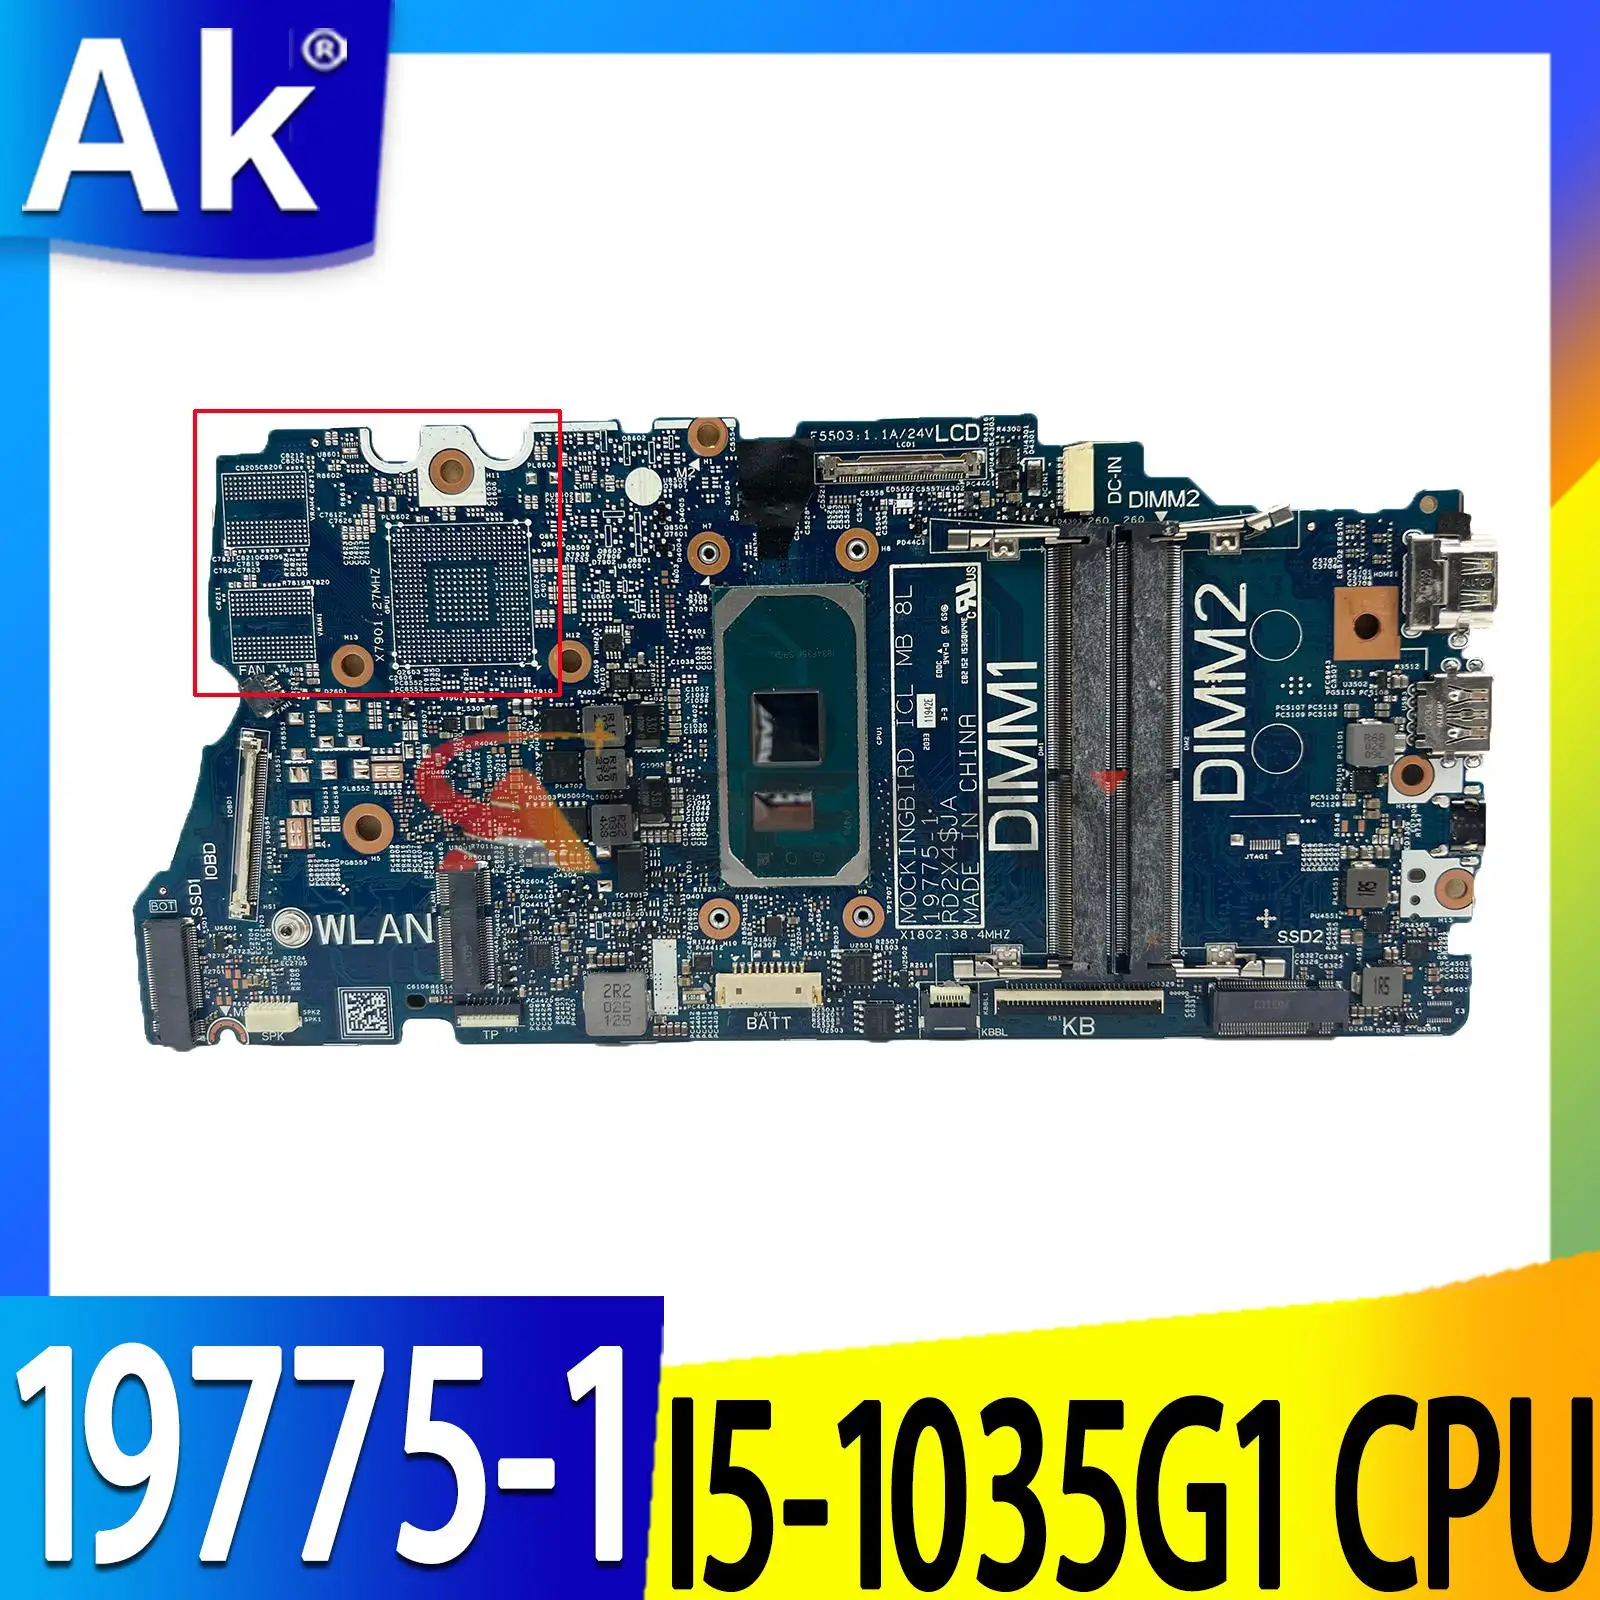 

Высококачественная материнская плата CN-0TG76R 0TG76R TG76R для ноутбука 15 5501, материнская плата 19775-1 с процессором SRGKL I5-1035G 1 100%, полностью протестирована